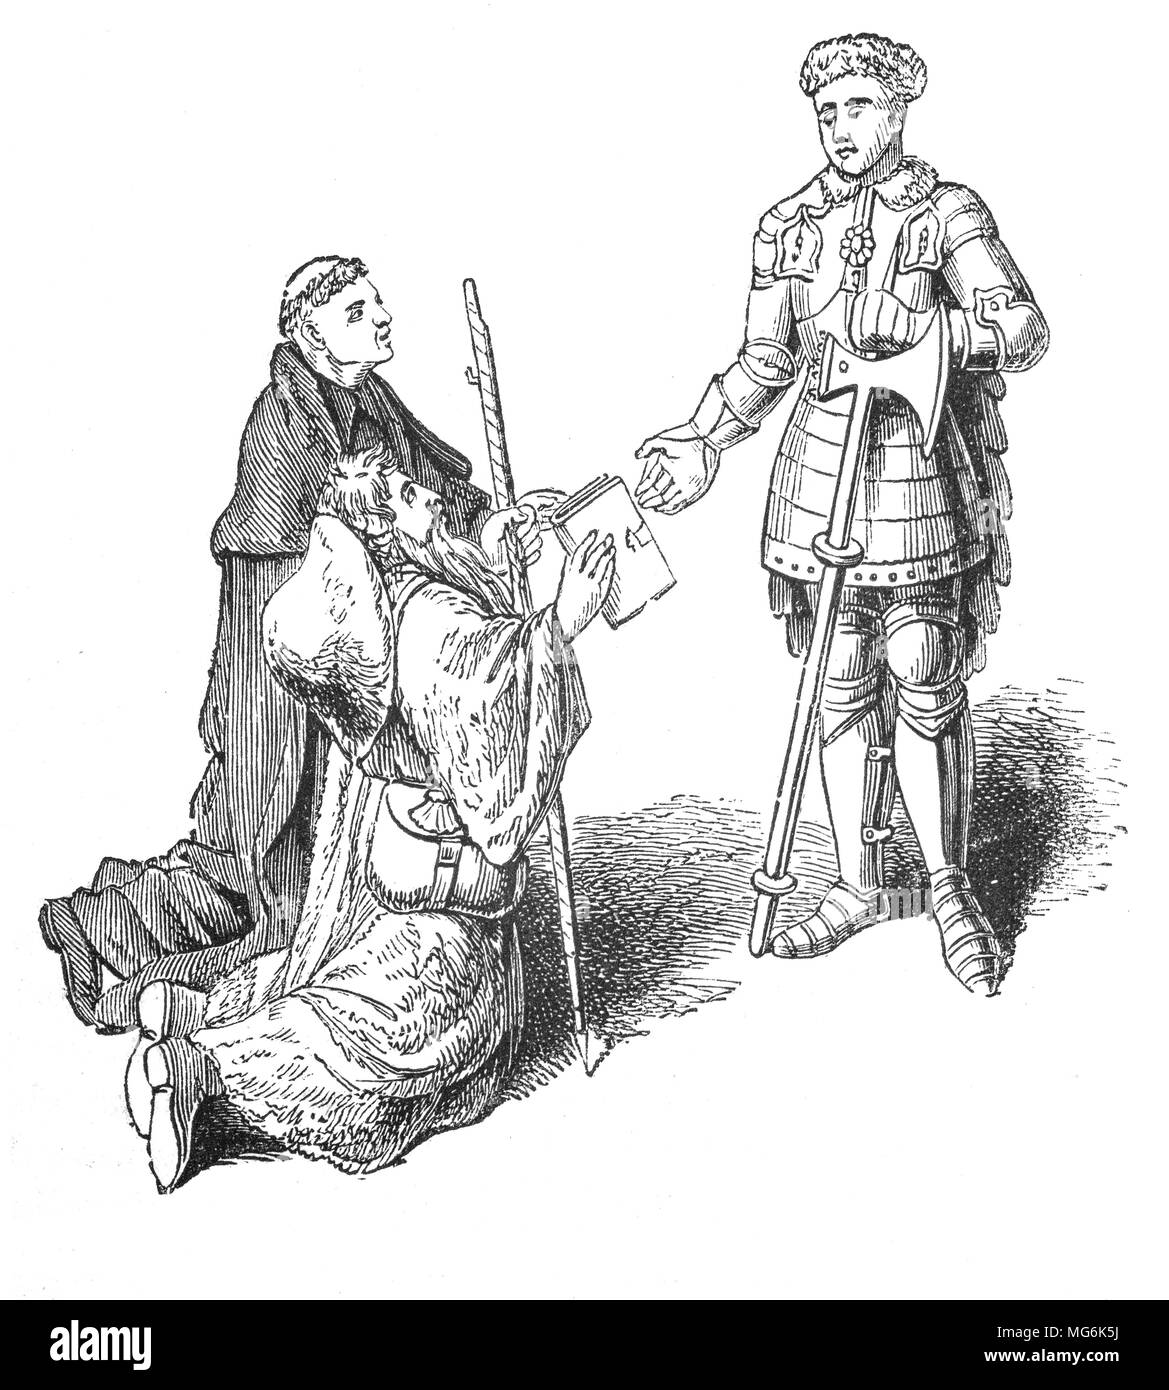 John Lydgate de Bury (1370 - 1451), moine et poète, présentant son poème, "Le Pèlerin" de Richard de Beauchamp, le 13e comte de Warwick. Il est né à Lidgate, près de Haverhill, Suffolk, Angleterre. Avec une prodigieuse œuvre poétique, il a demandé et obtenu l'patronage pour son travail littéraire à la cour de Henri IV d'Angleterre, Henri V d'Angleterre et Henri VI d'Angleterre. Ses protecteurs inclus, parmi beaucoup d'autres, le maire et les échevins de Londres, le chapitre de la Cathédrale St Paul, Richard de Beauchamp. Banque D'Images